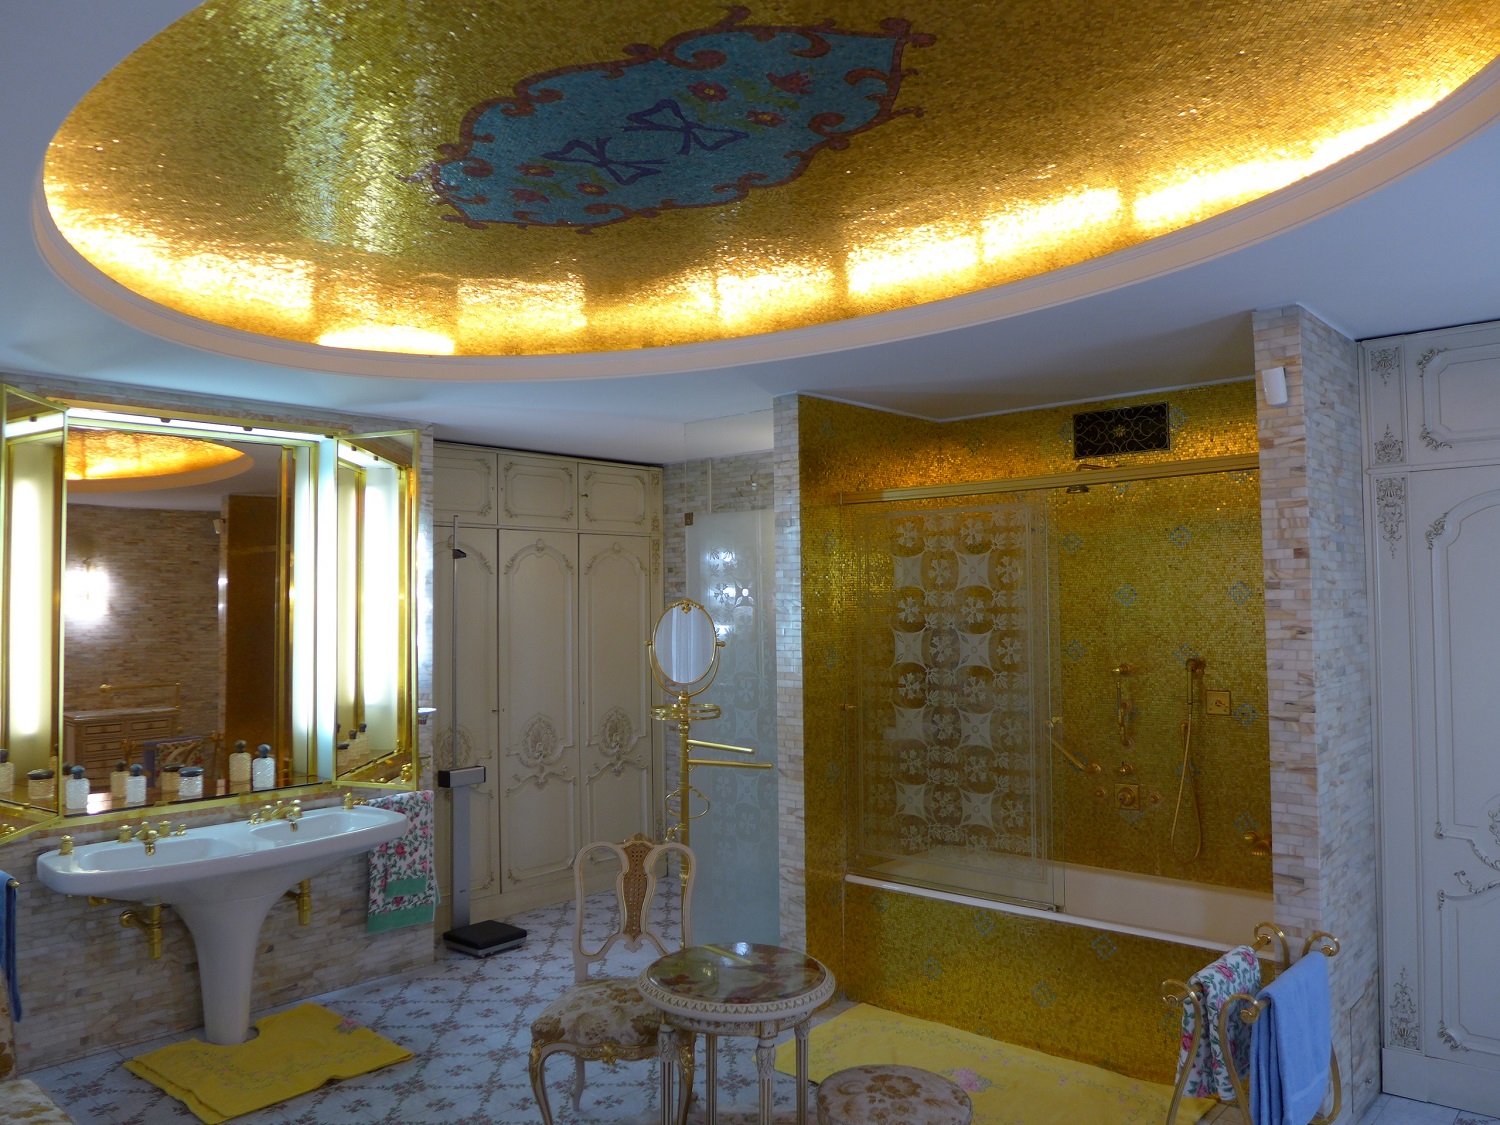 La salle de bain du couple, plaquée or.